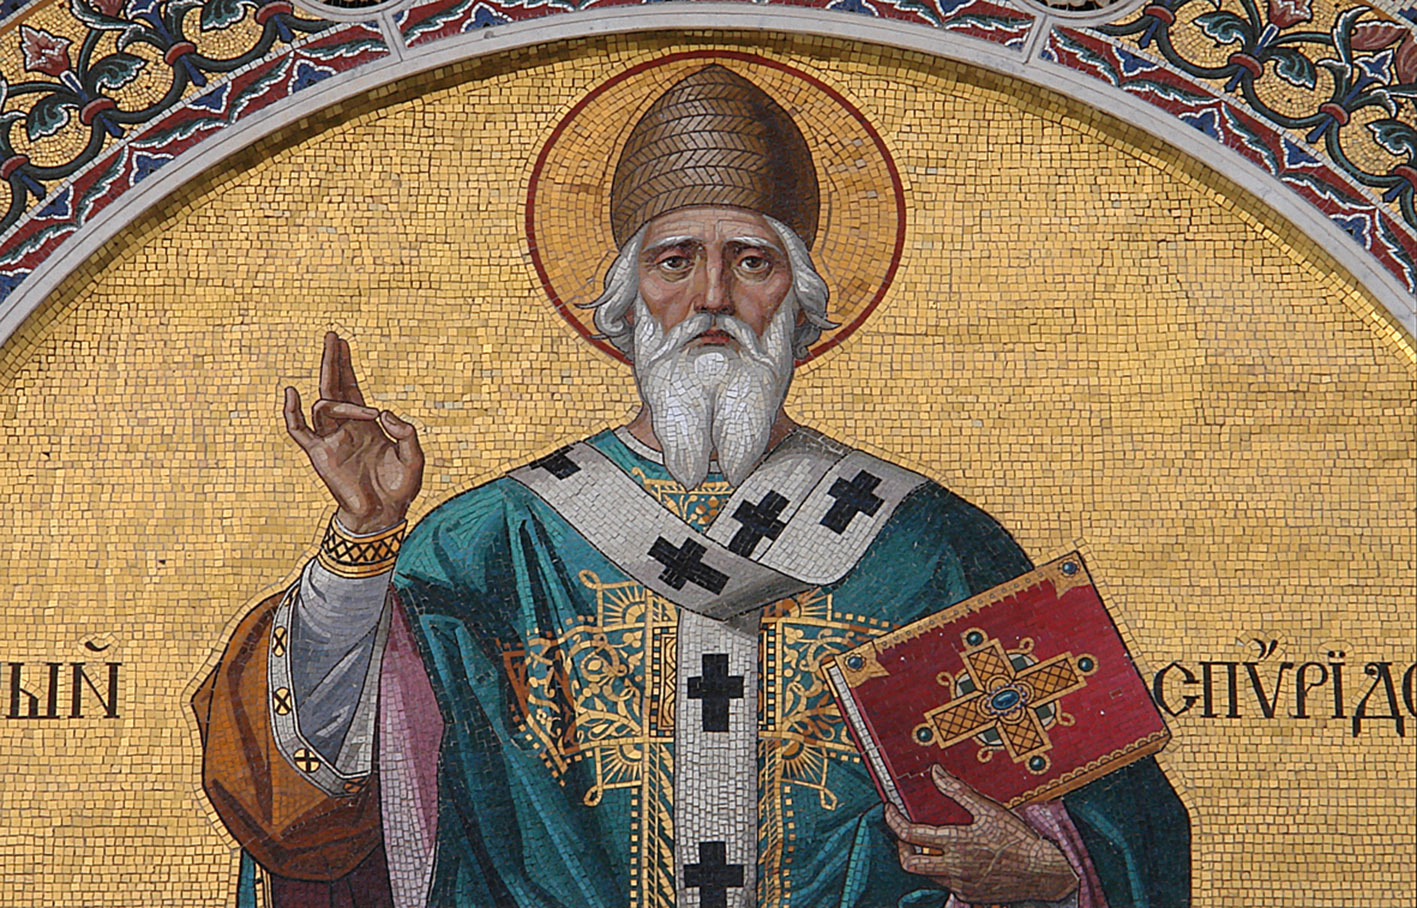 ВНИМАНИЮ православных: в Темрюк прибывает икона Святителя Спиридона Тримифунтского с его мощями